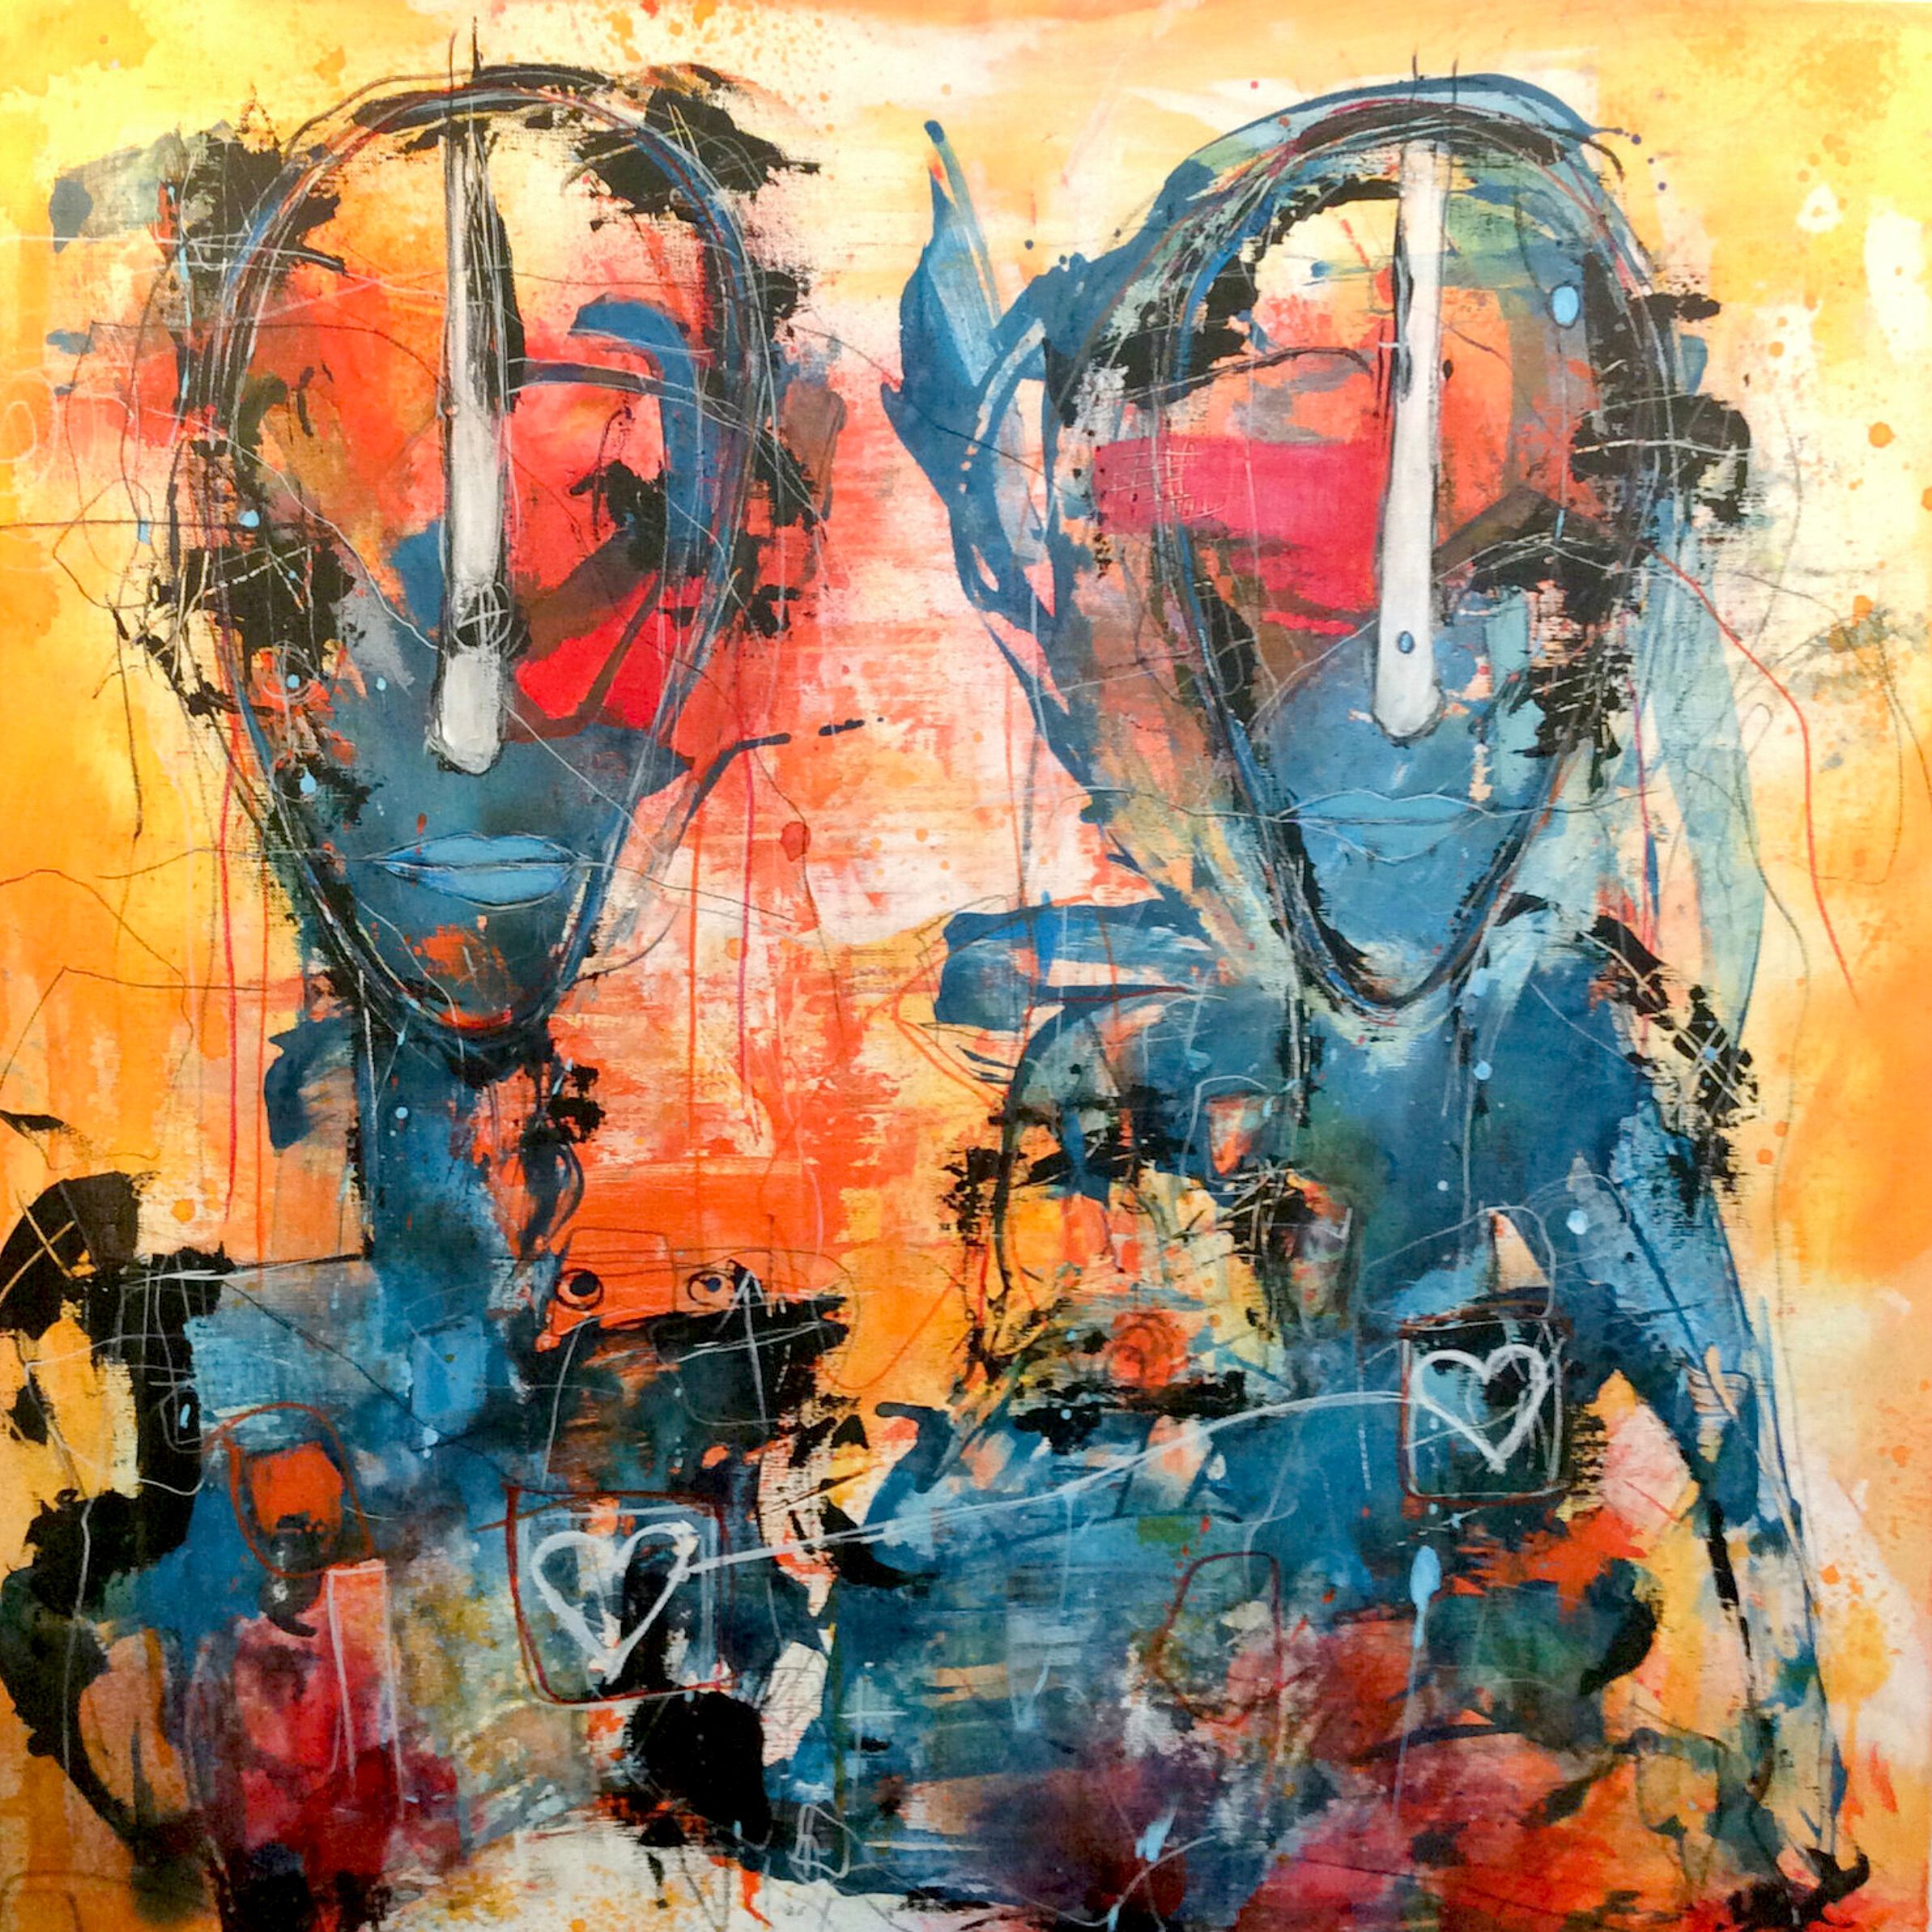 El retrato semiabstracto "Conectado con el corazón" de Ilona Schmidt muestra a dos personas o rostros. La paleta de colores del cuadro se compone de diferentes tonos de azul, amarillo y rojo que se mezclan armoniosamente.